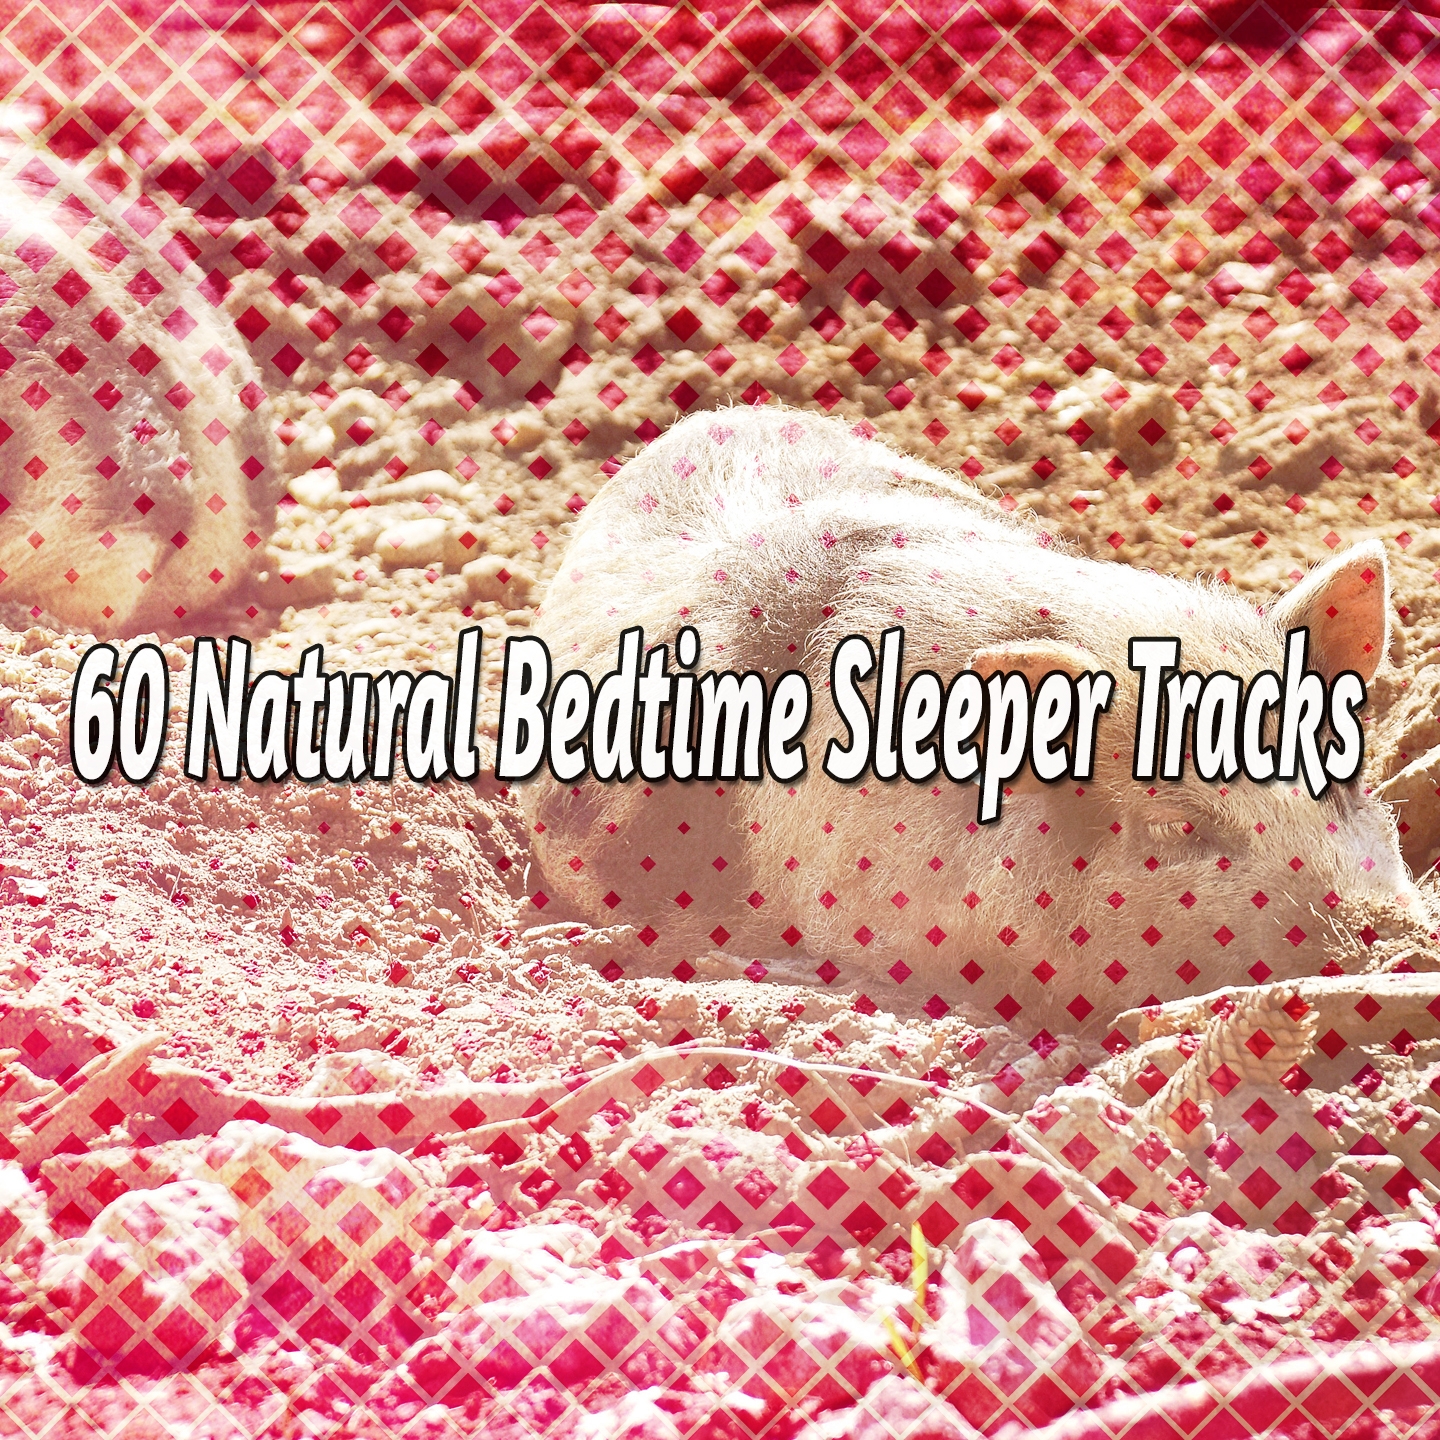 60 Natural Bedtime Sleeper Tracks